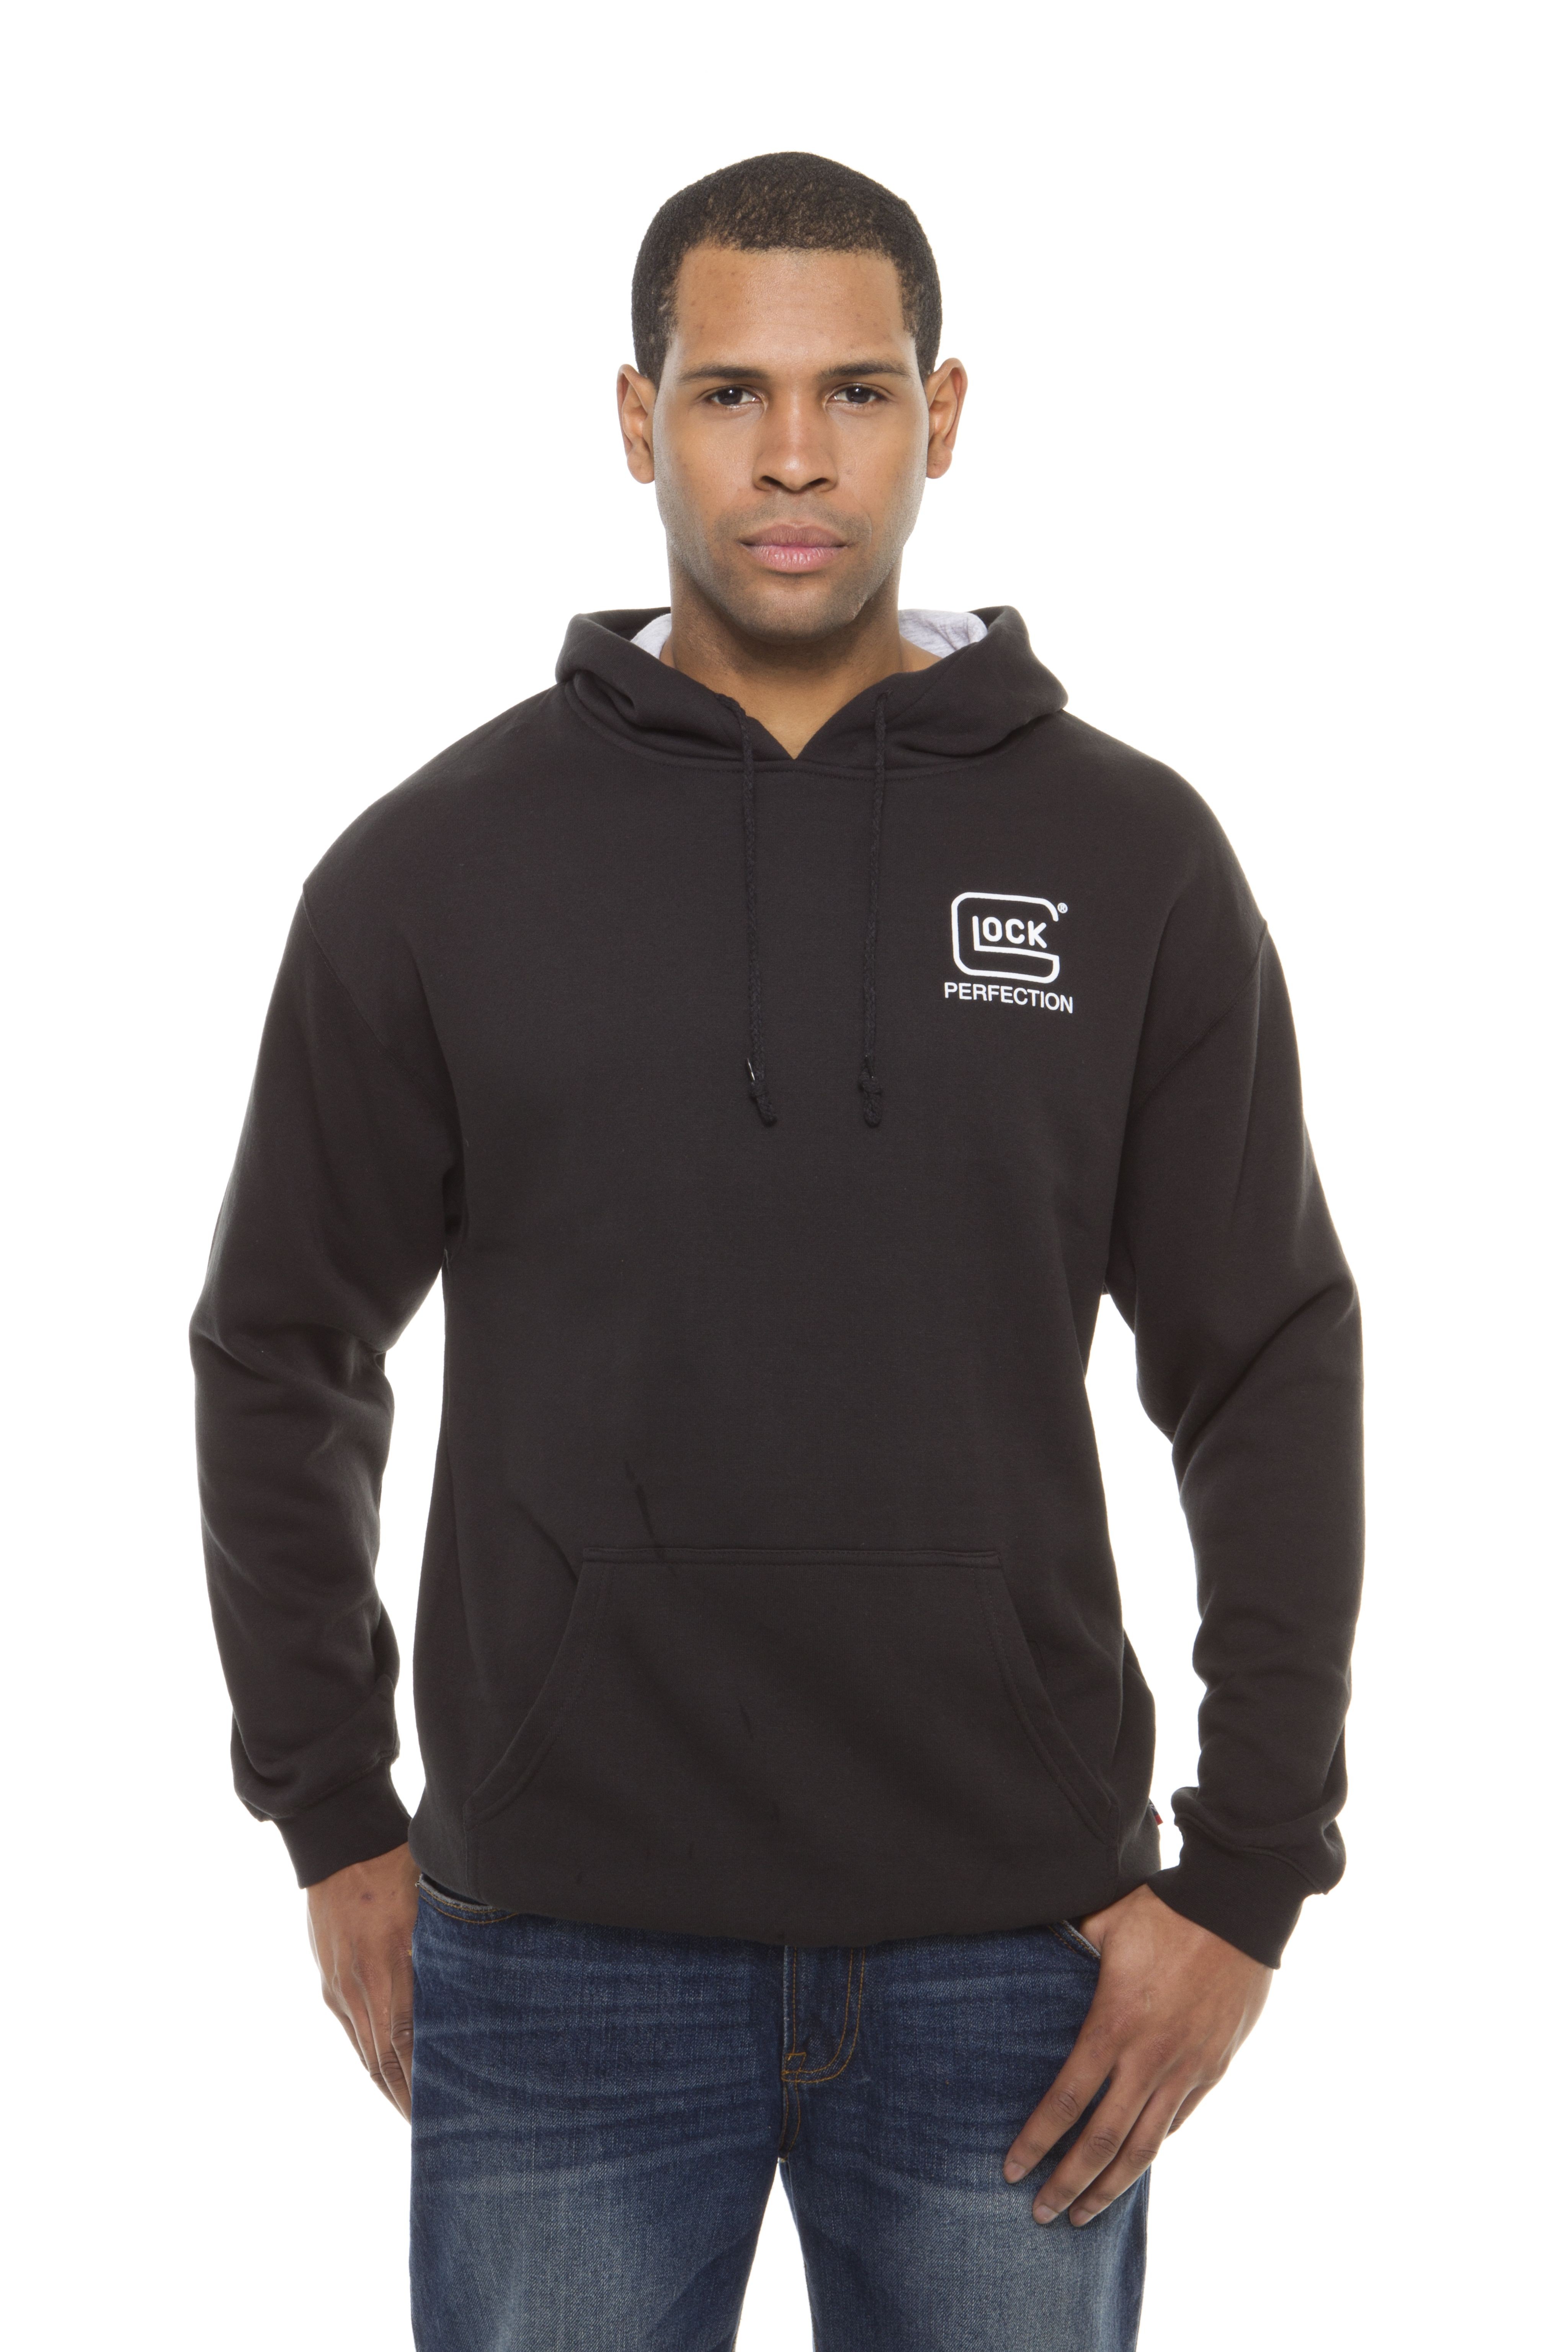 Glock Hoodie Sweatshirt Black XL AA12004 | Black Label Tactical